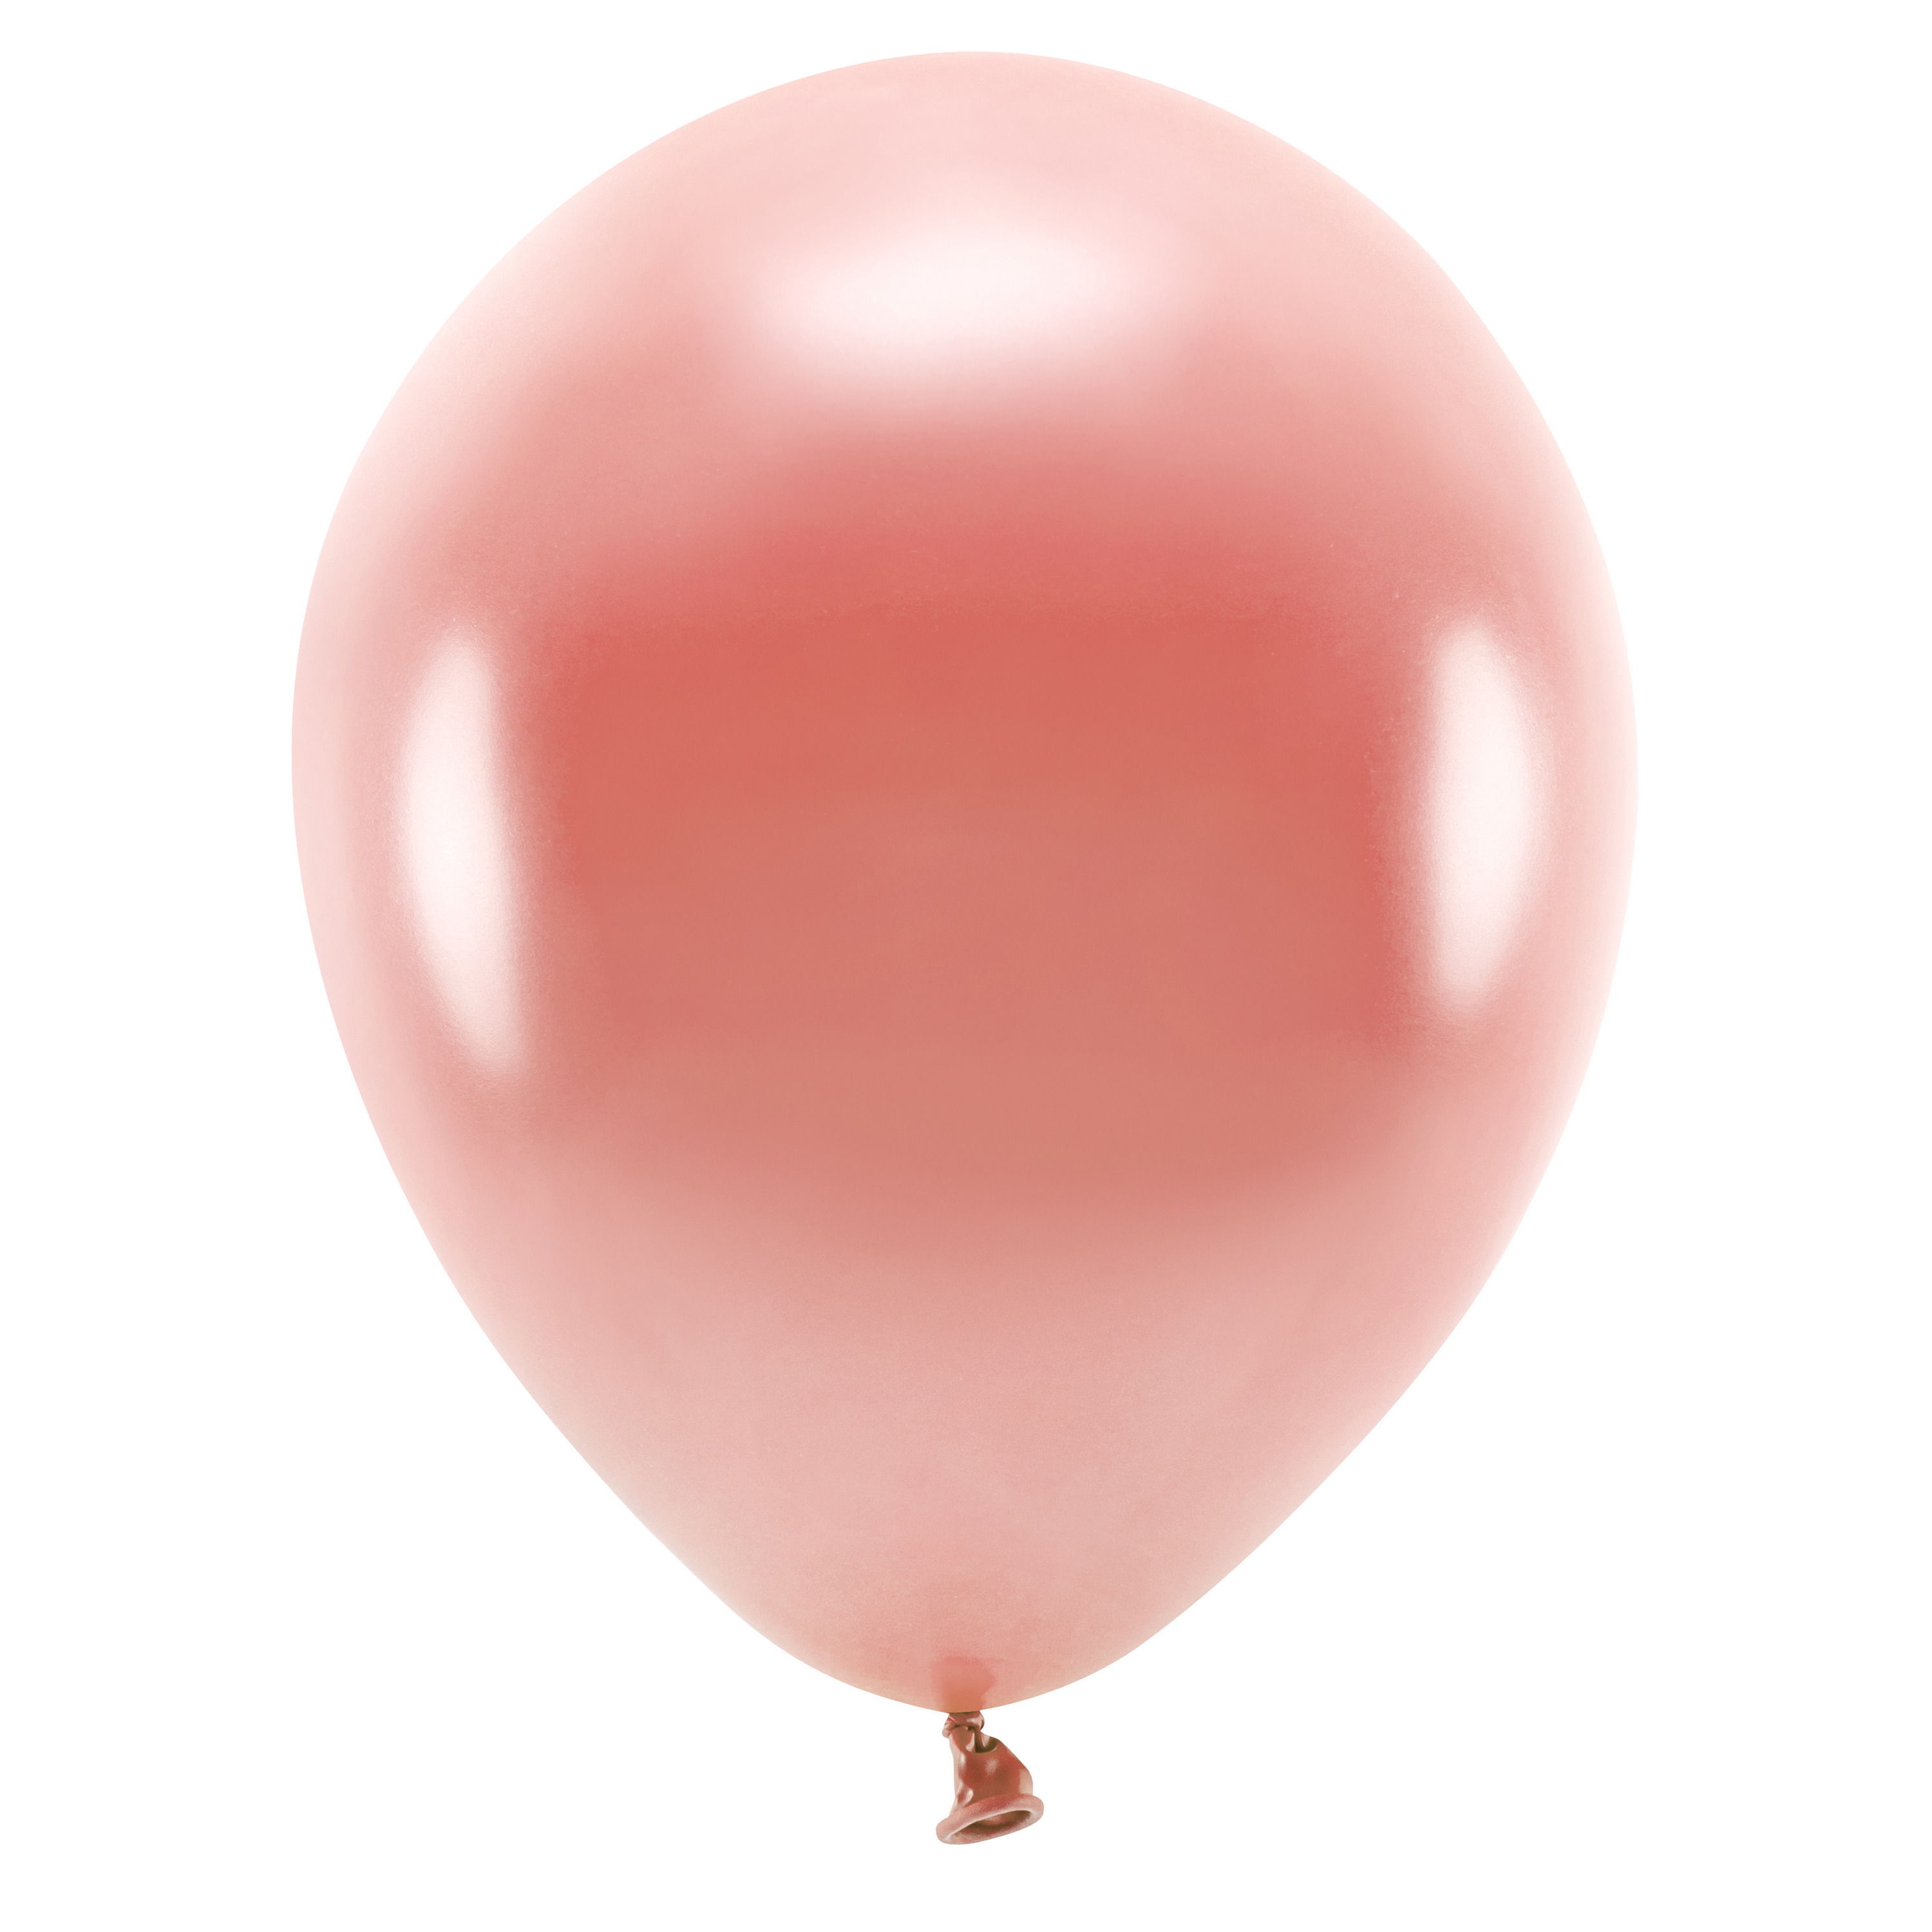 100x Rosegouden ballonnen 26 cm eco/biologisch afbreekbaar - Milieuvriendelijke ballonnen - Feestversiering/feestdecoratie - Rosegoud thema - Themafeest versiering - Action products